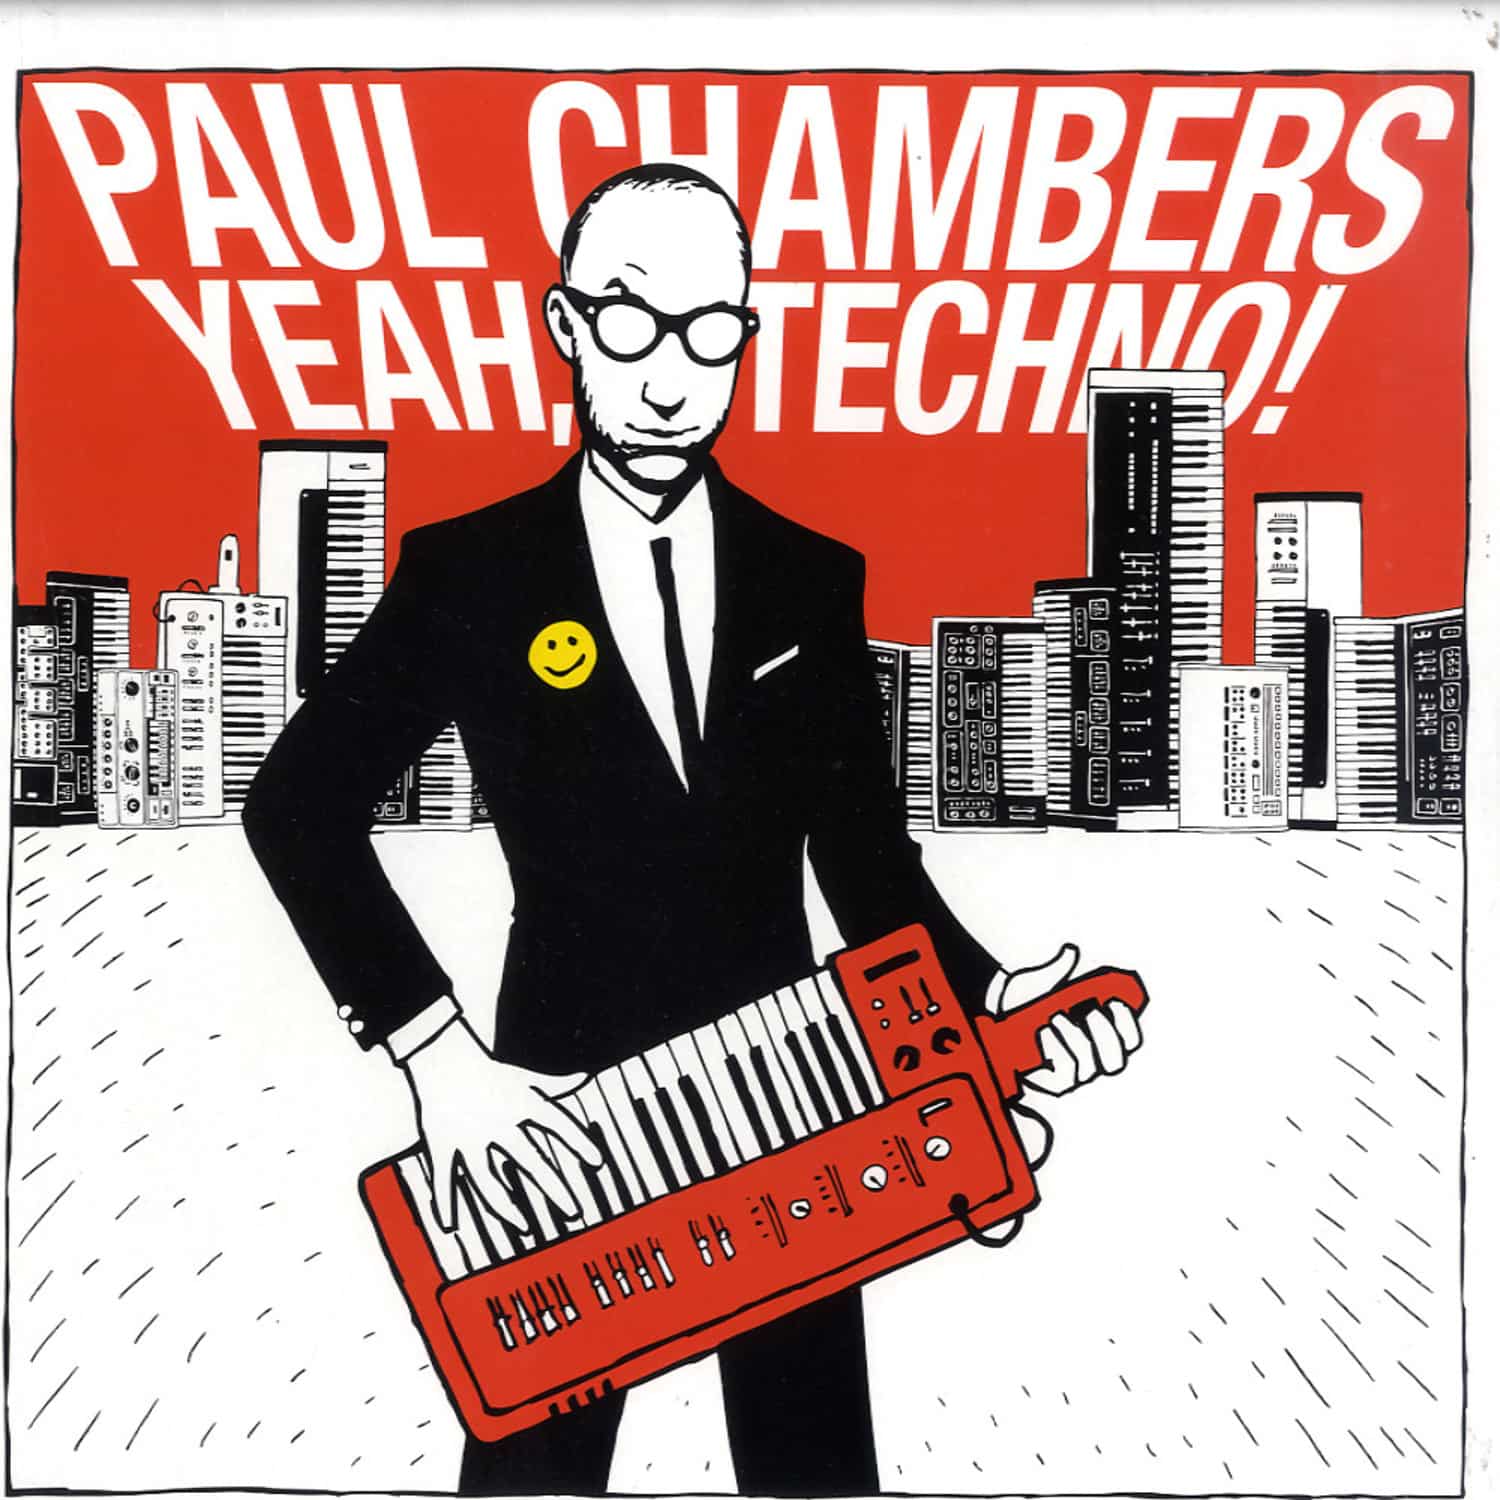 Paul Chambers - YEAH TECHNO/ SOULWAX RMX